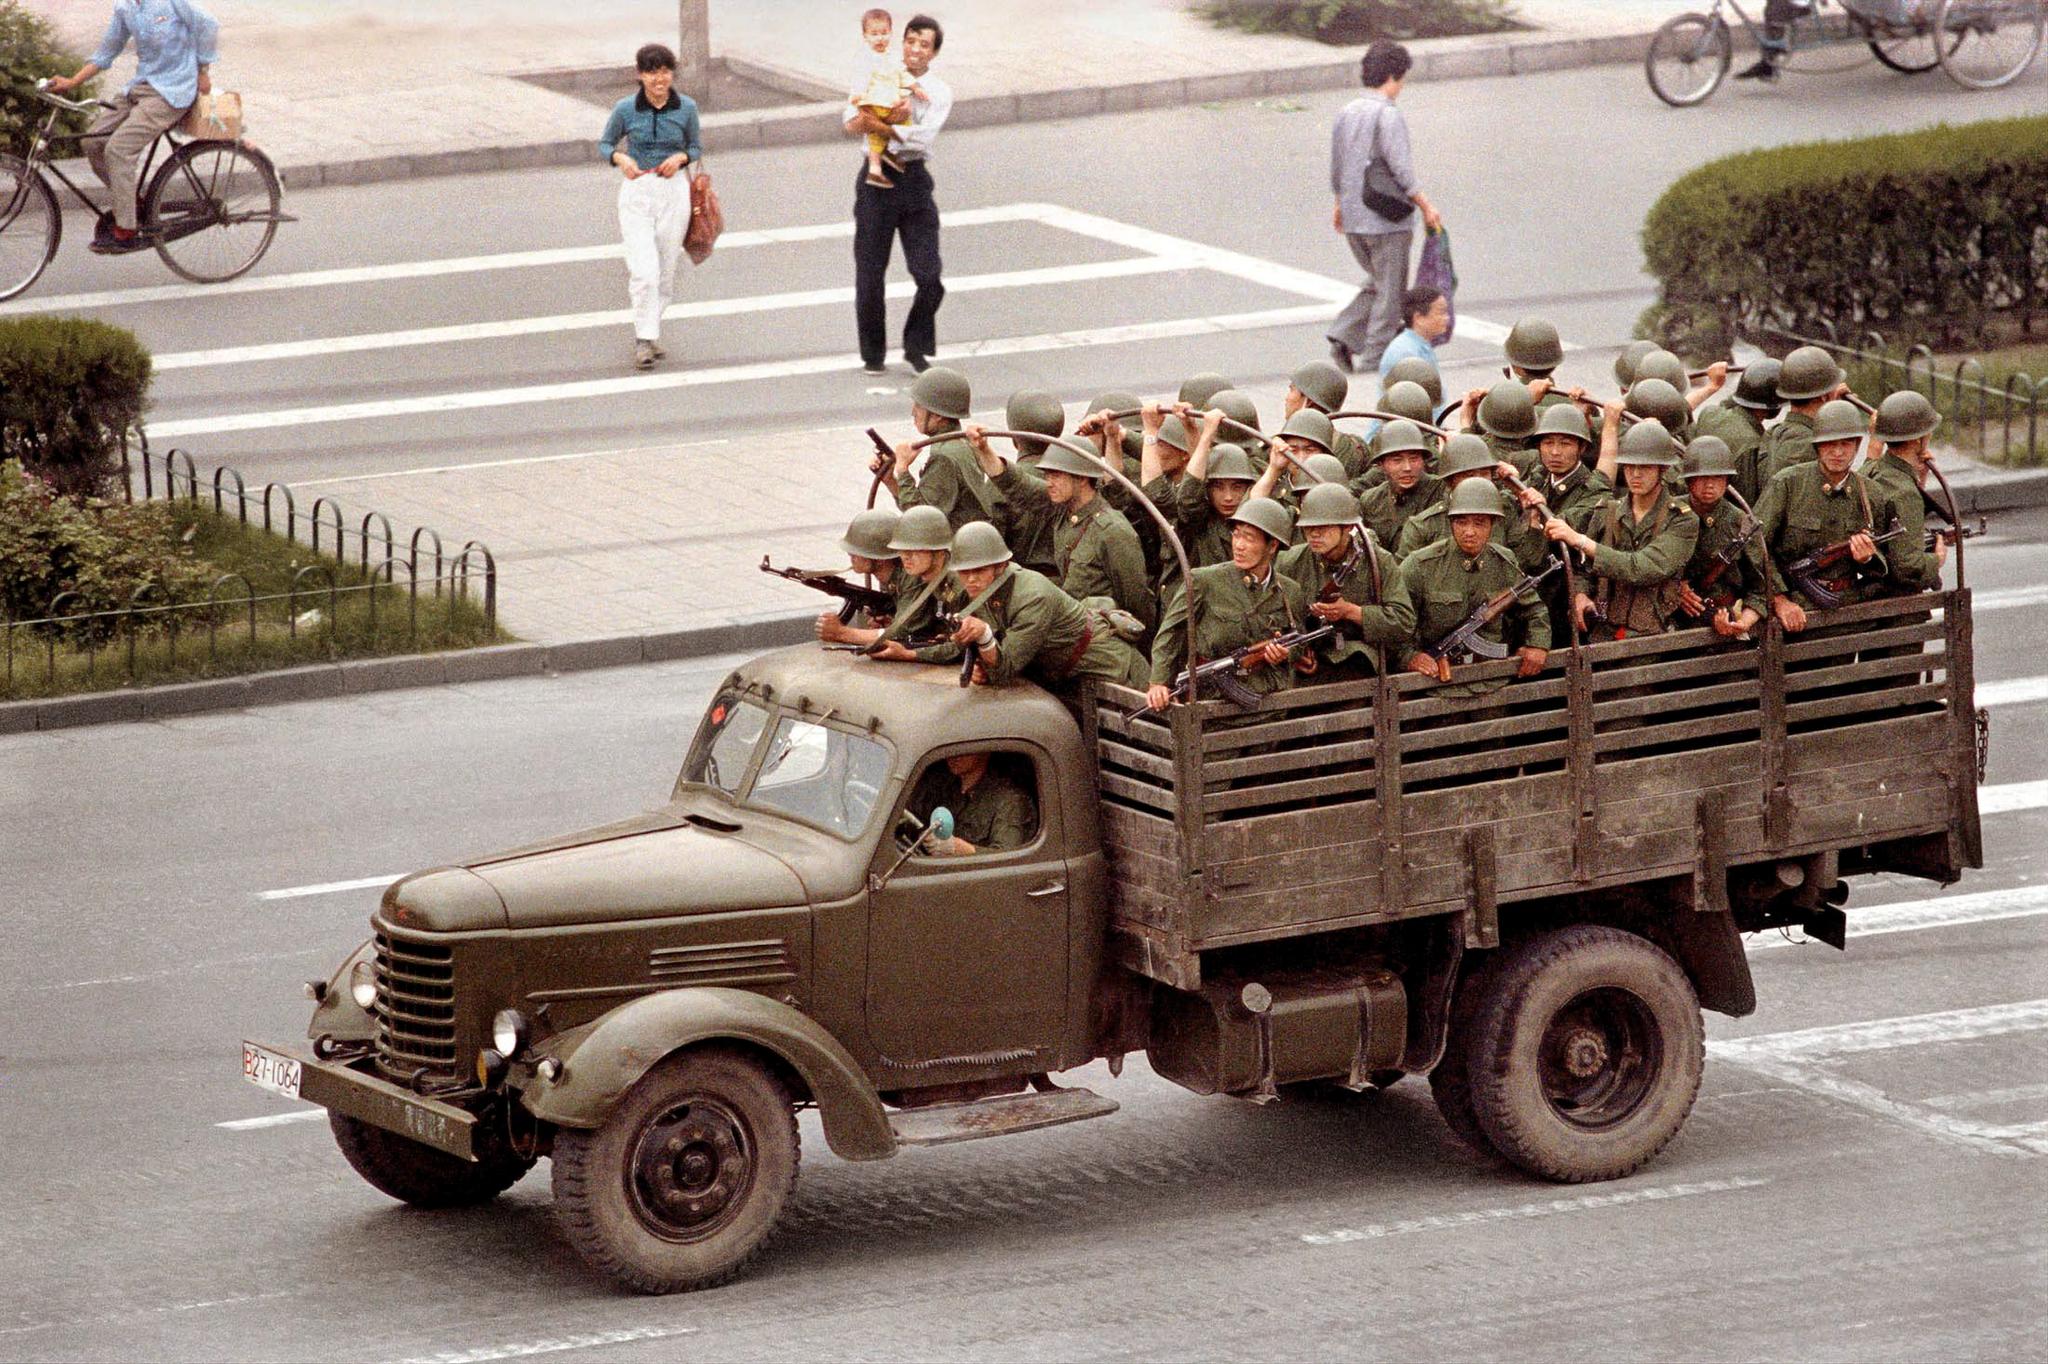 4. juni 1989: En lastebil med soldater fra Folkets frigjøringshær patruljerer Chang'an dagen etter at flere hundre, muligens tusener, ble drept i gatene rundt Den himmelske fredsplass. 